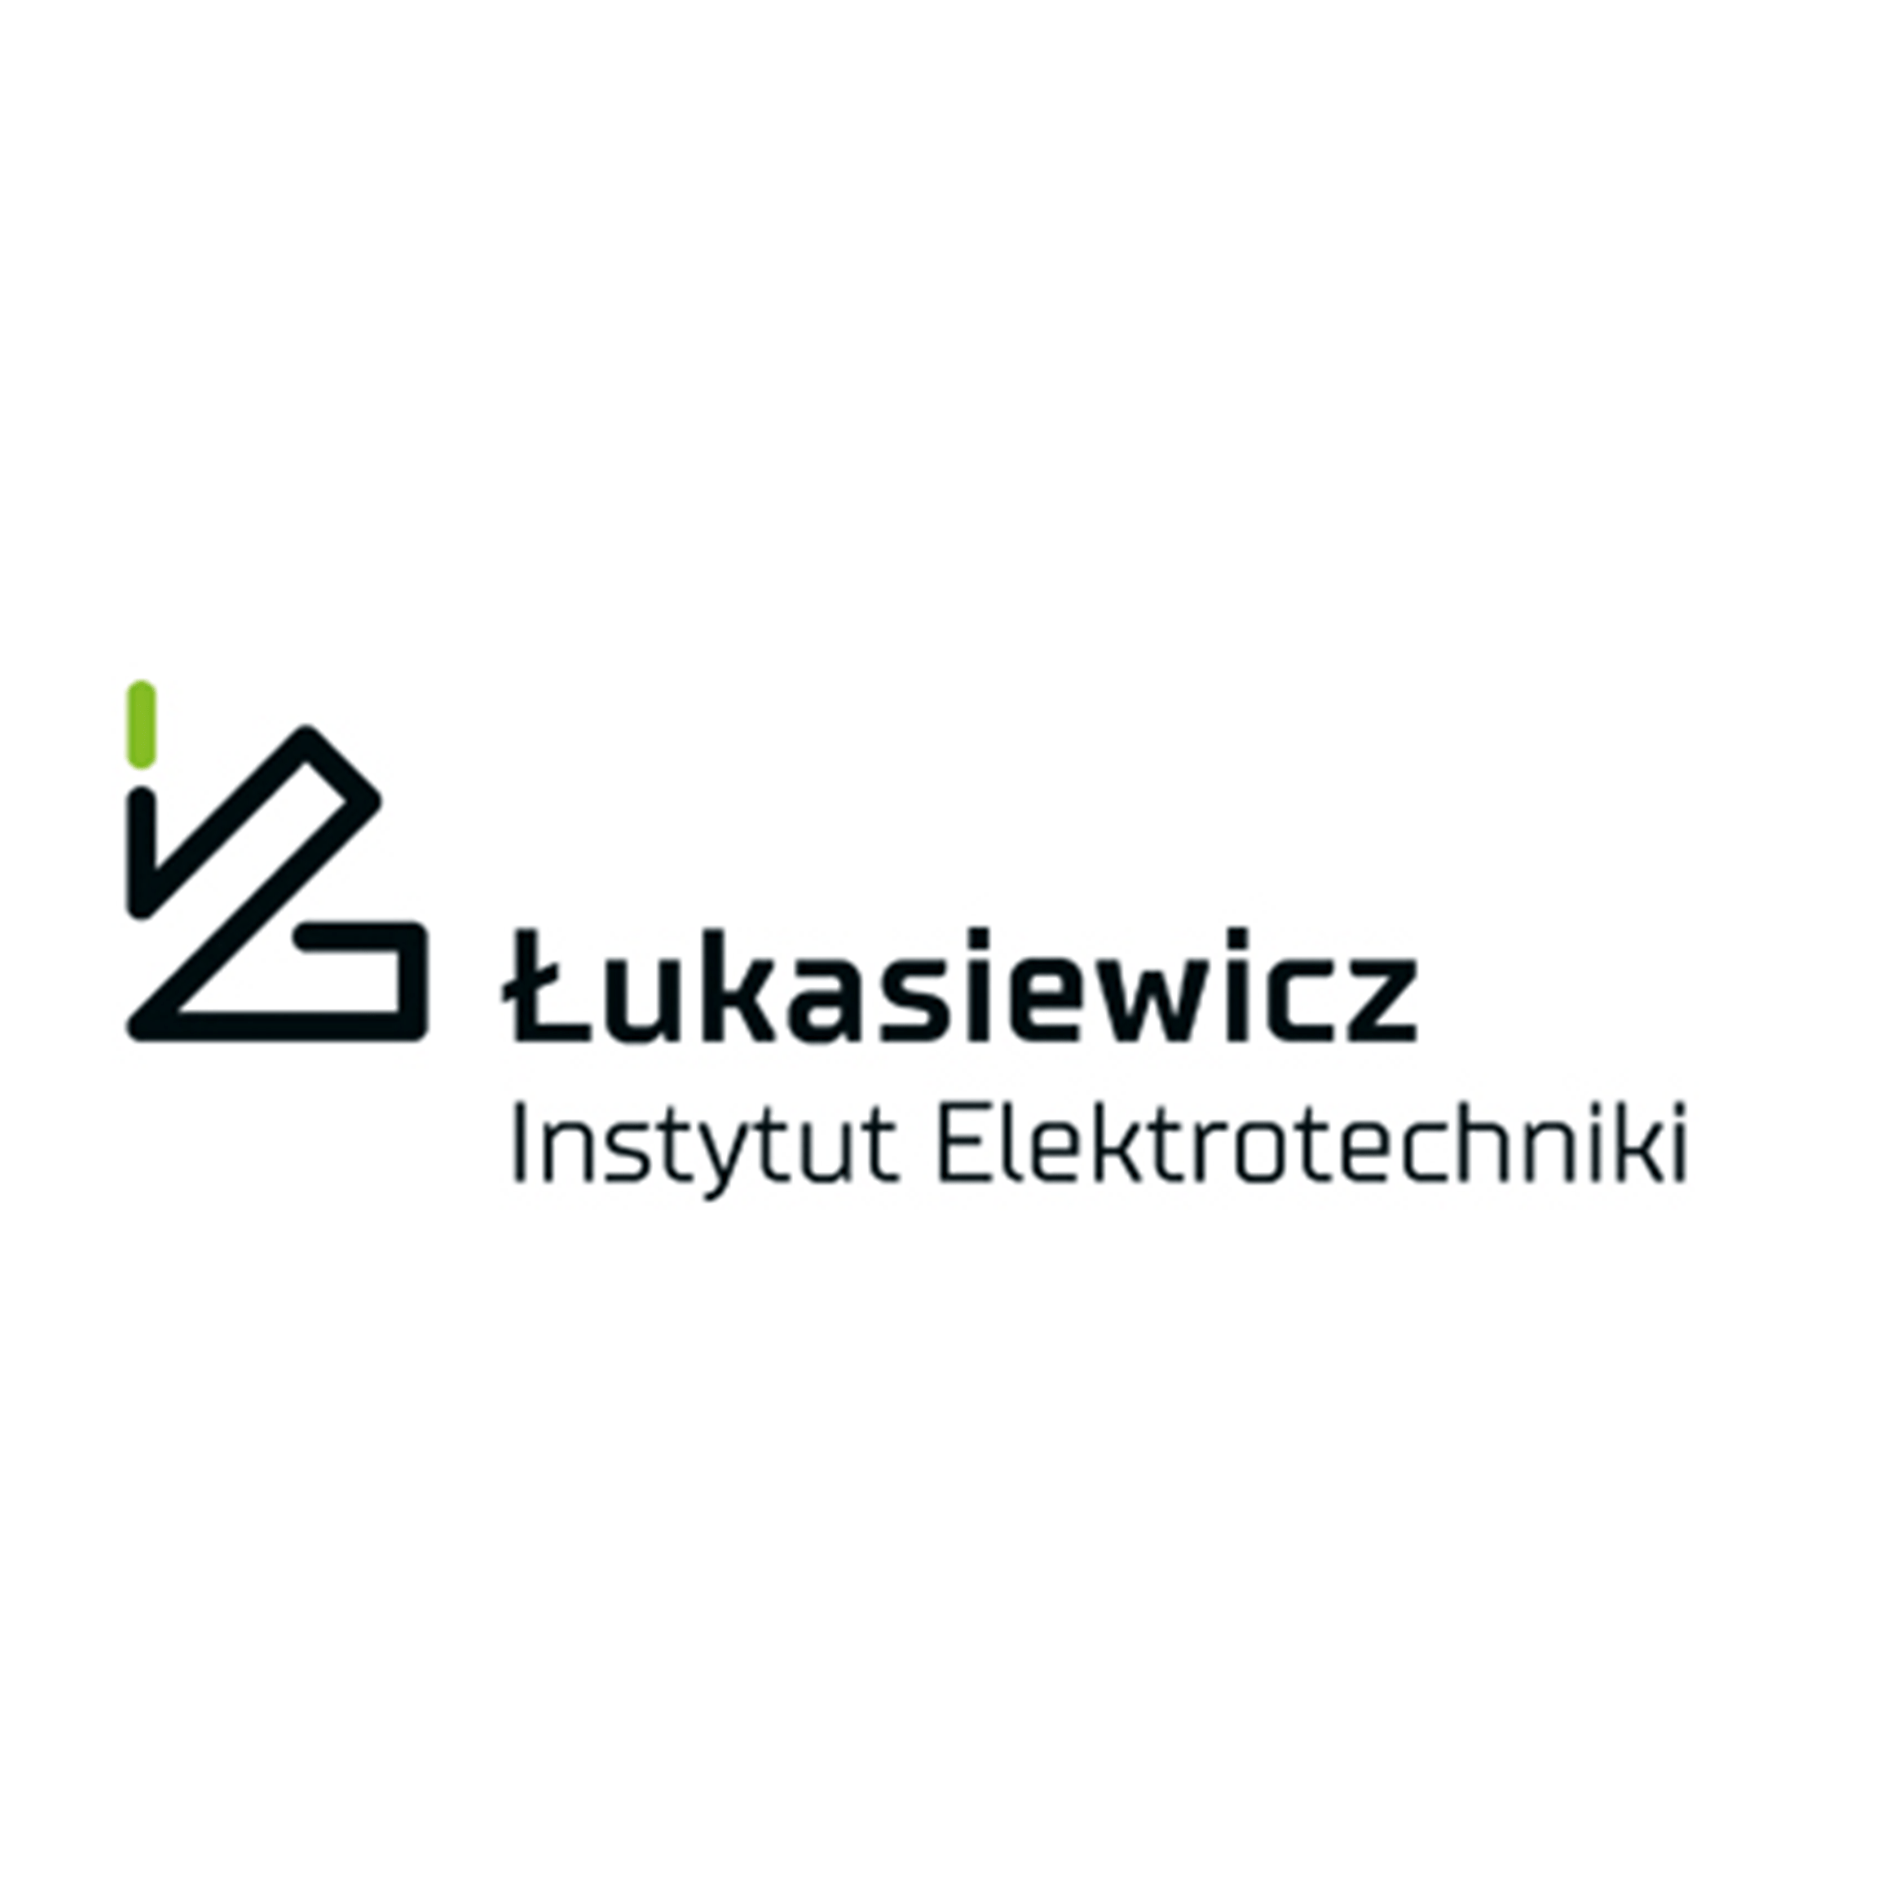 Instytut Elektrotechniki jest jednym z największych instytutów w Polsce.